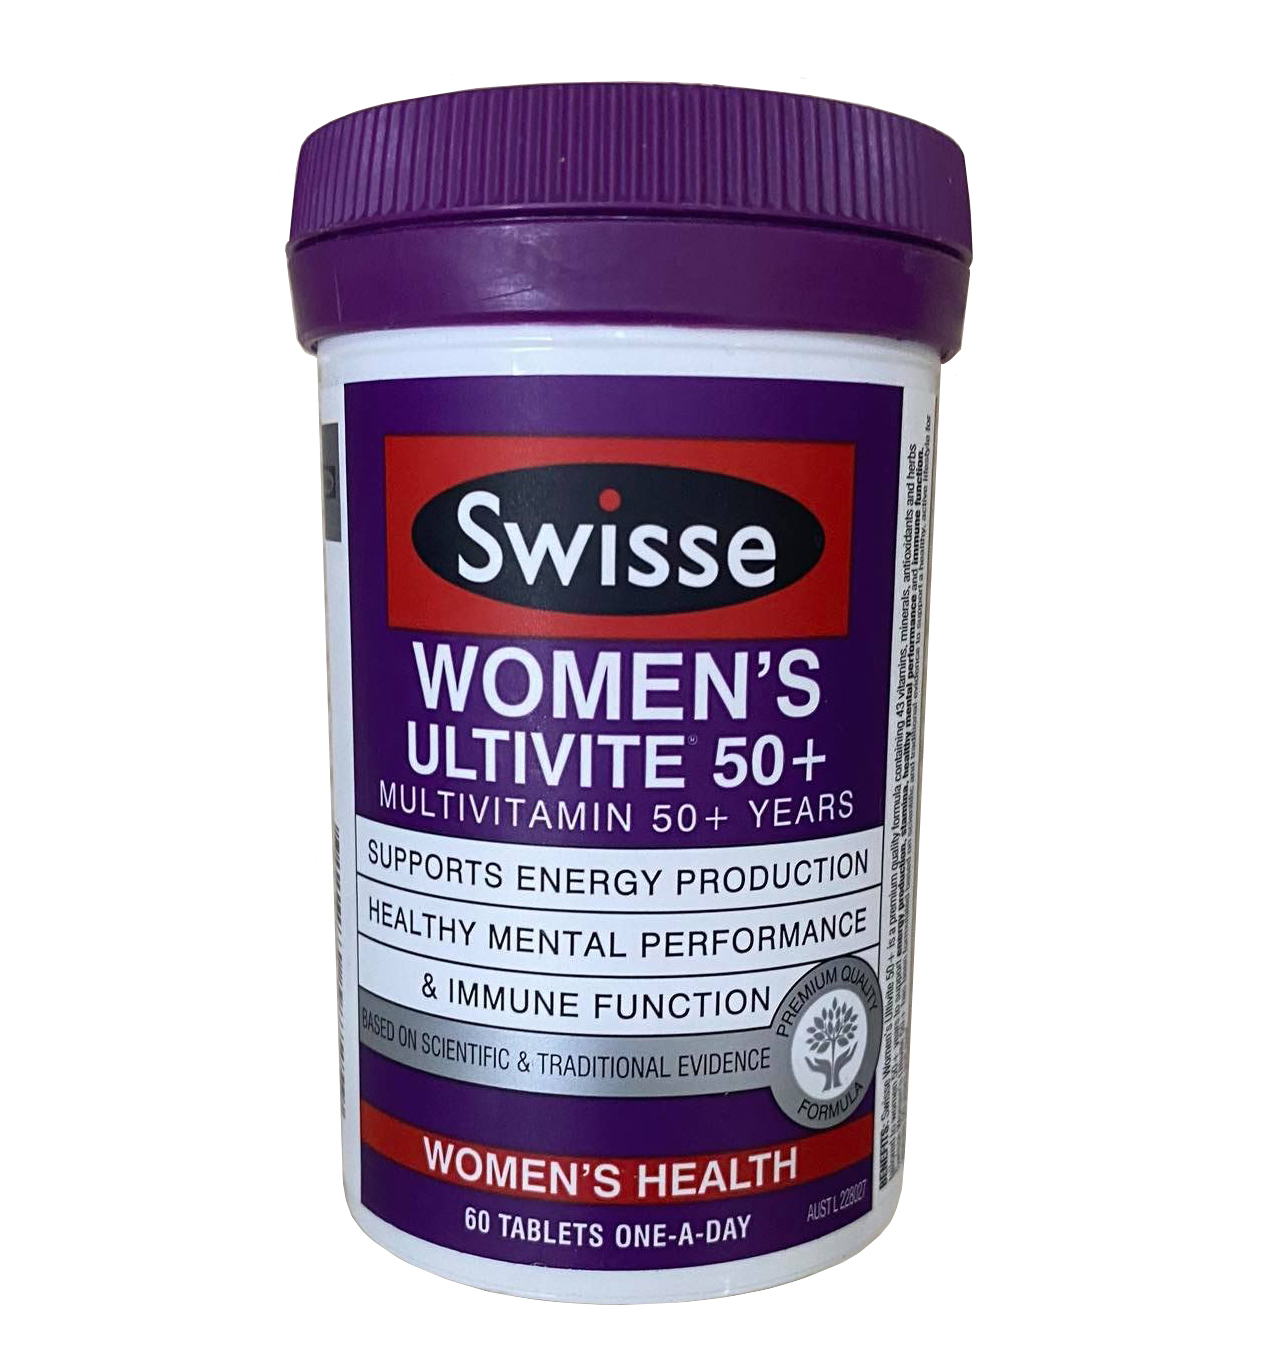 Vitamin cho nữ trên 50 tuổi Swisse Womens Ultivite 50+ mẫu mới